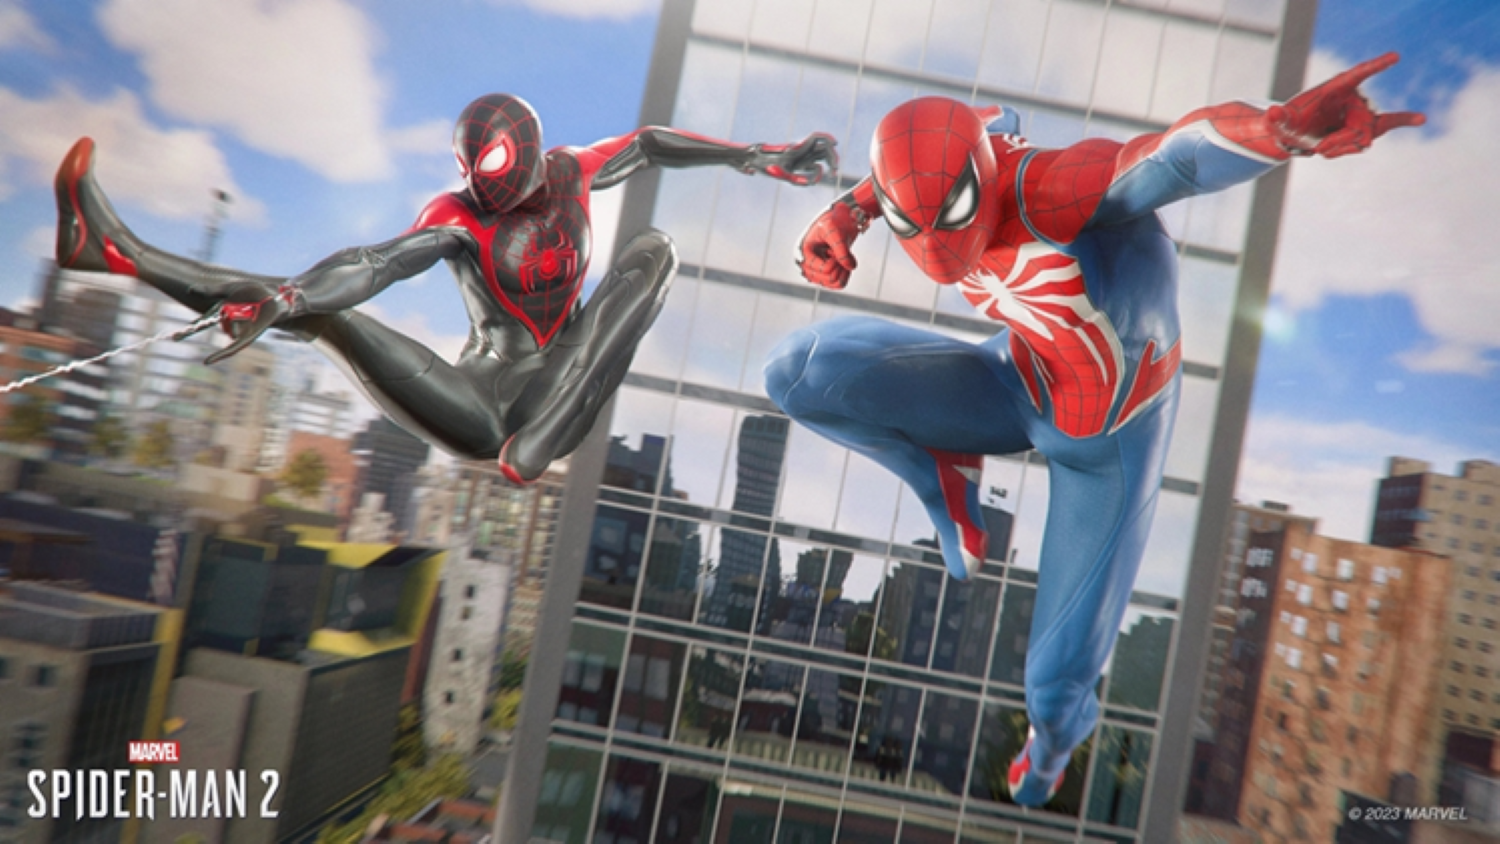 แชร์ประสบการณ์ไปร่วมงานเปิดตัวเกมส์ Spiderman 2 ณ Central world